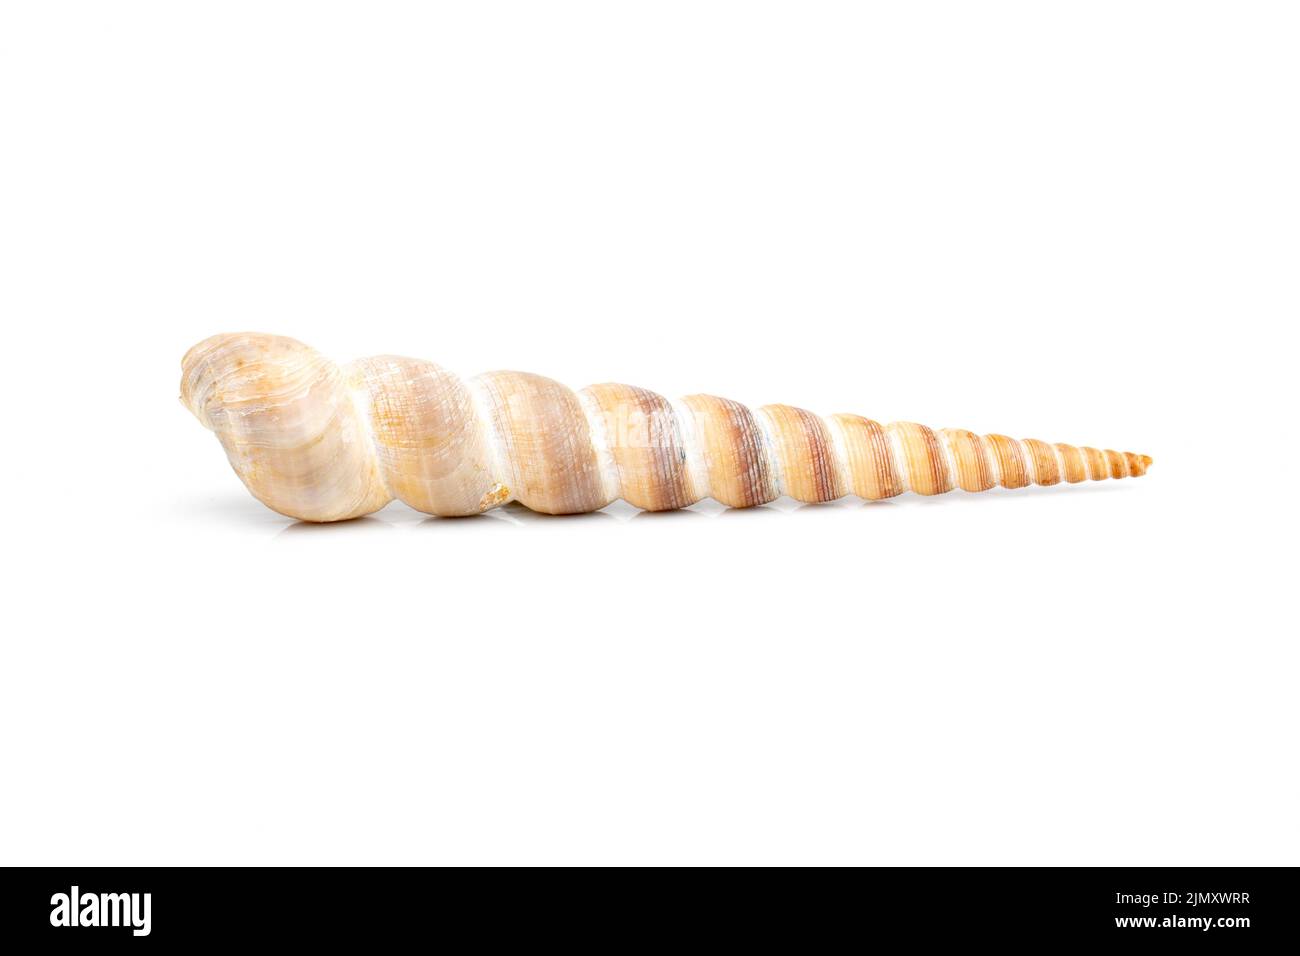 Immagine del guscio a cono appuntito (Terebridae) su sfondo bianco. Animali sottomarini. Conchiglie marine. Foto Stock